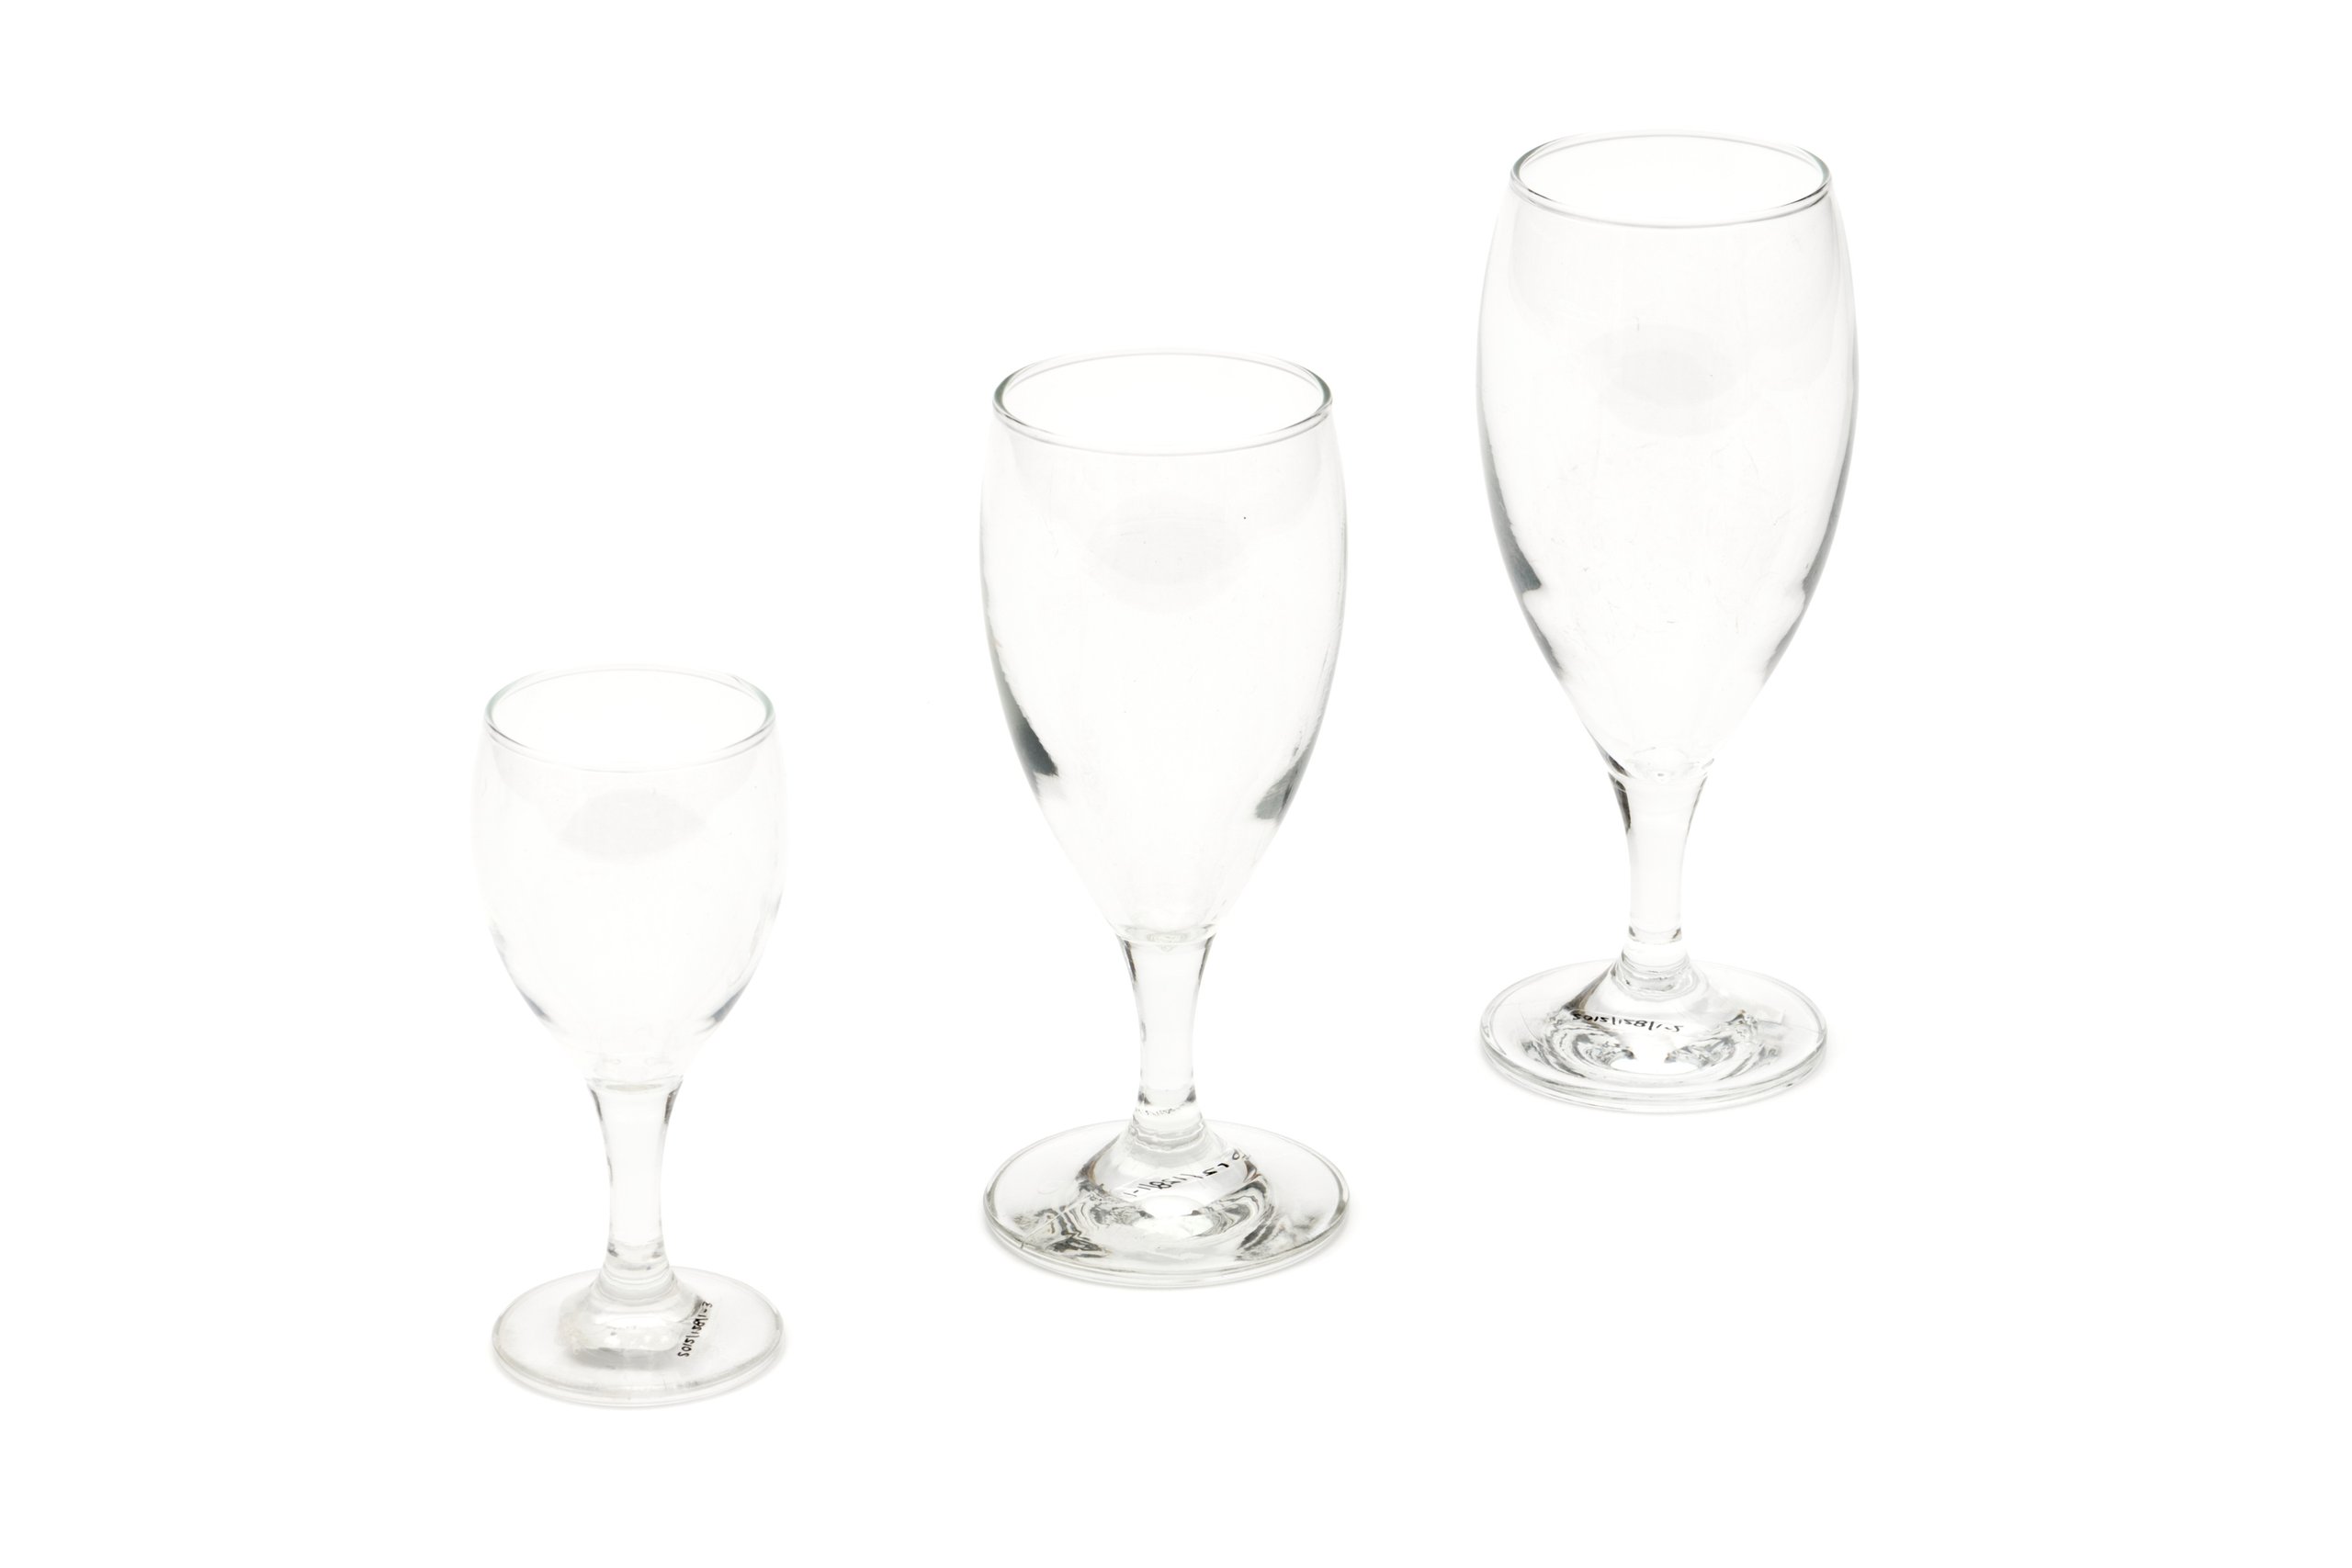 Crown Crystal 'Keonig' wine glasses